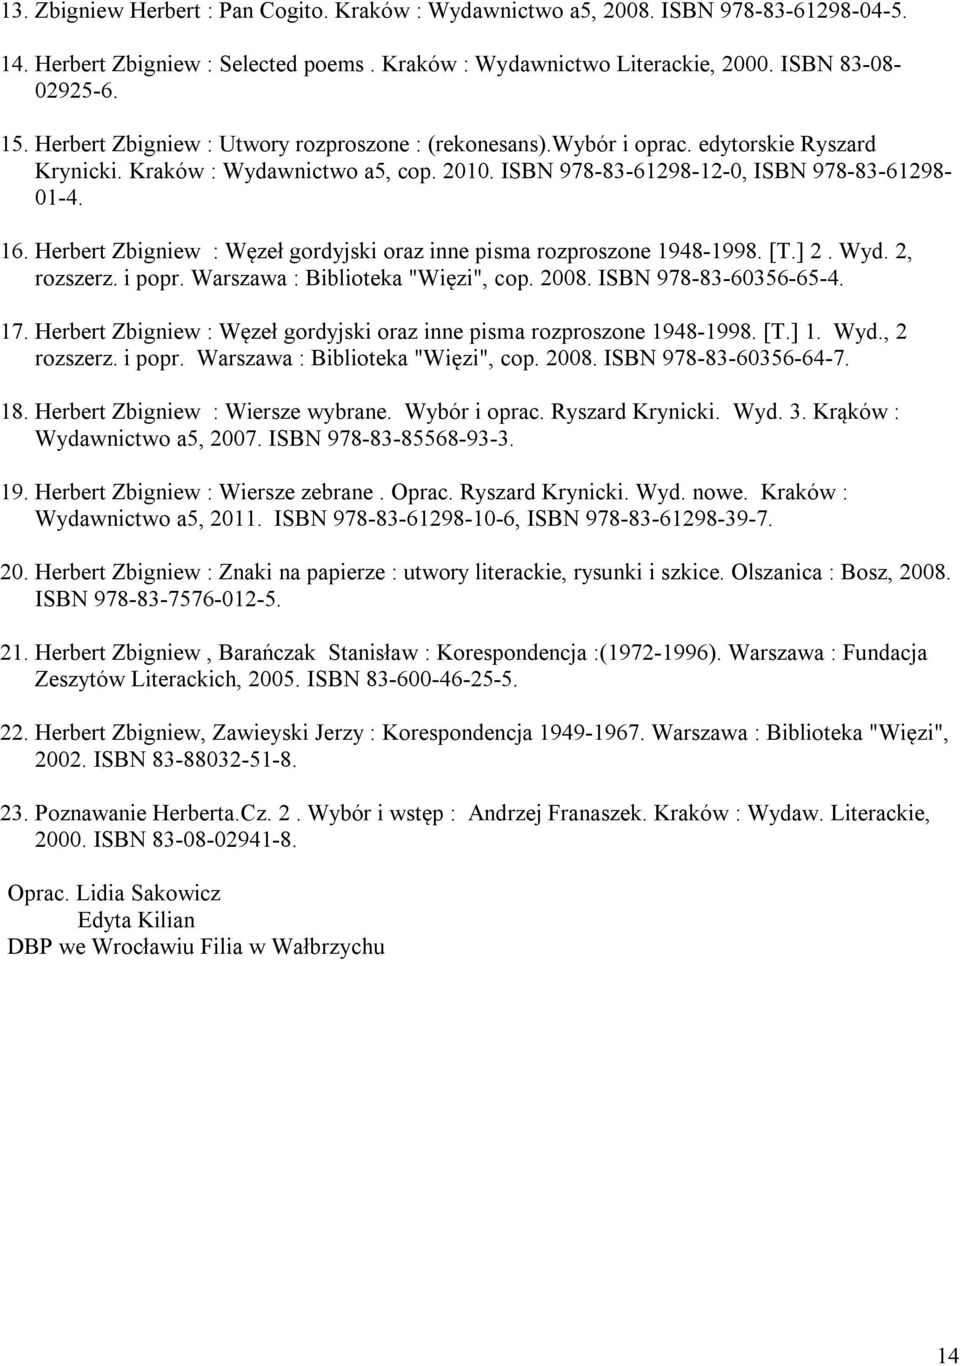 Herbert Zbigniew : Węzeł gordyjski oraz inne pisma rozproszone 1948-1998. [T.] 2. Wyd. 2, rozszerz. i popr. Warszawa : Biblioteka "Więzi", cop. 2008. ISBN 978-83-60356-65-4. 17.